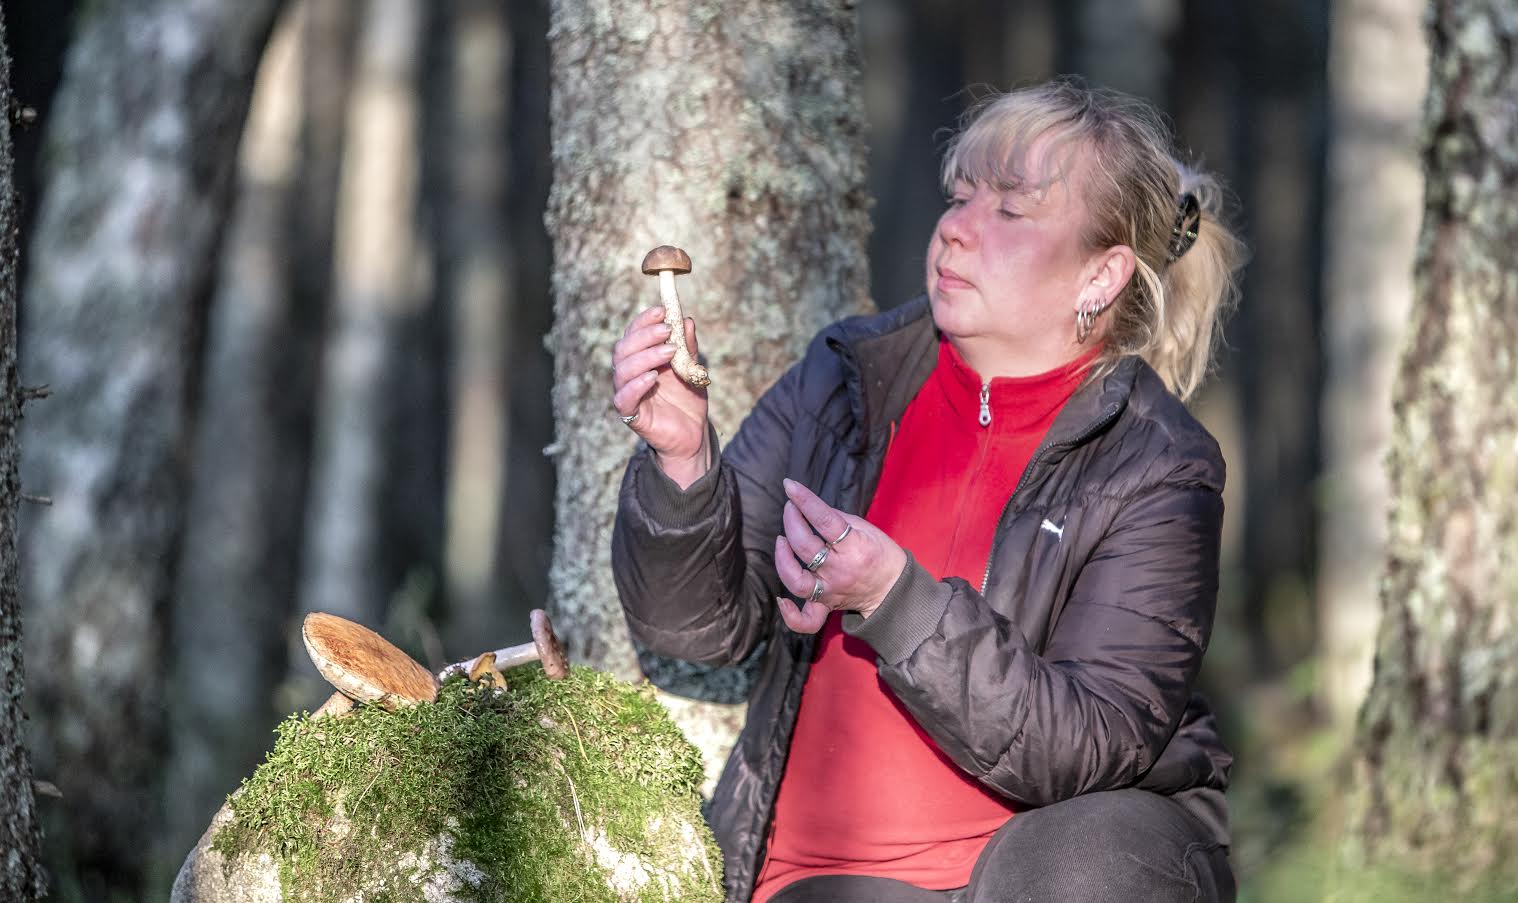 Marje Mürk on metsas seenel käinud lapsest saadik ja ta naudib looduses olemist. Foto: AIGAR NAGEL